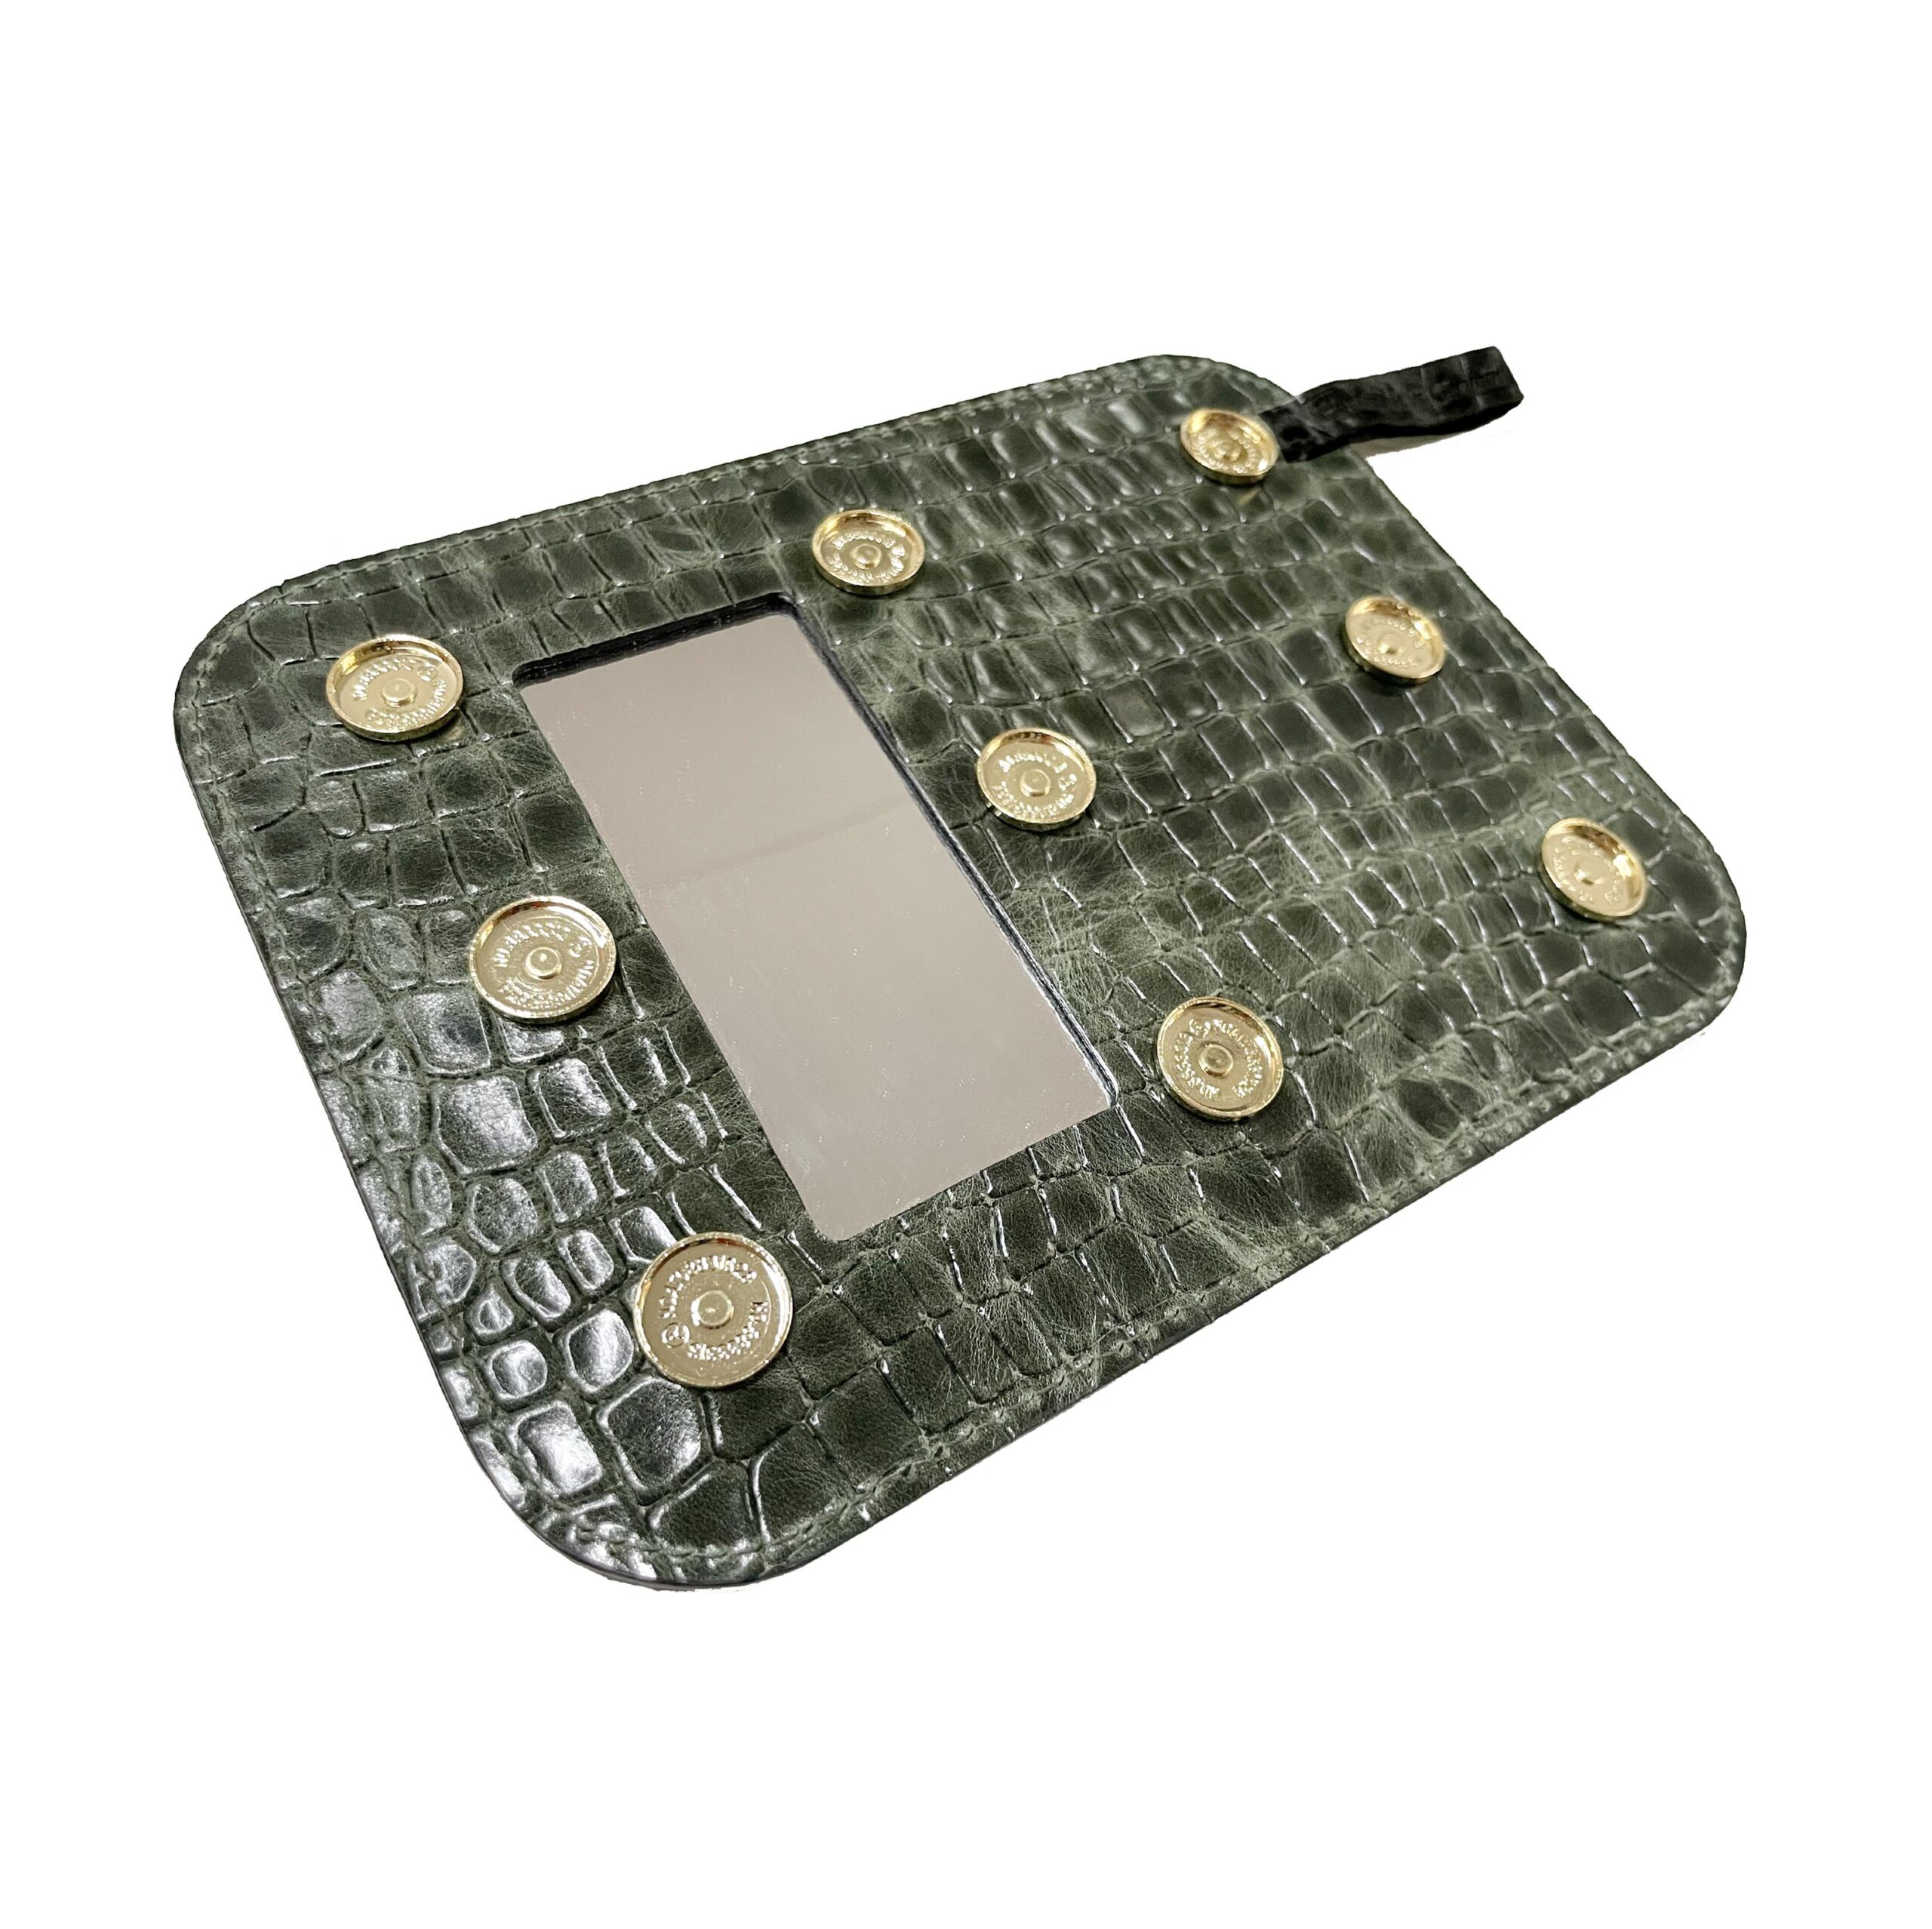 Croco Optik StyleCover backside mirror Schminkspiegel Grün Lackleder Prägung in Krokodil Muster Green Patent Crackle leather für KATY MERCURY Bags wandelbare Taschen handmade in Germany